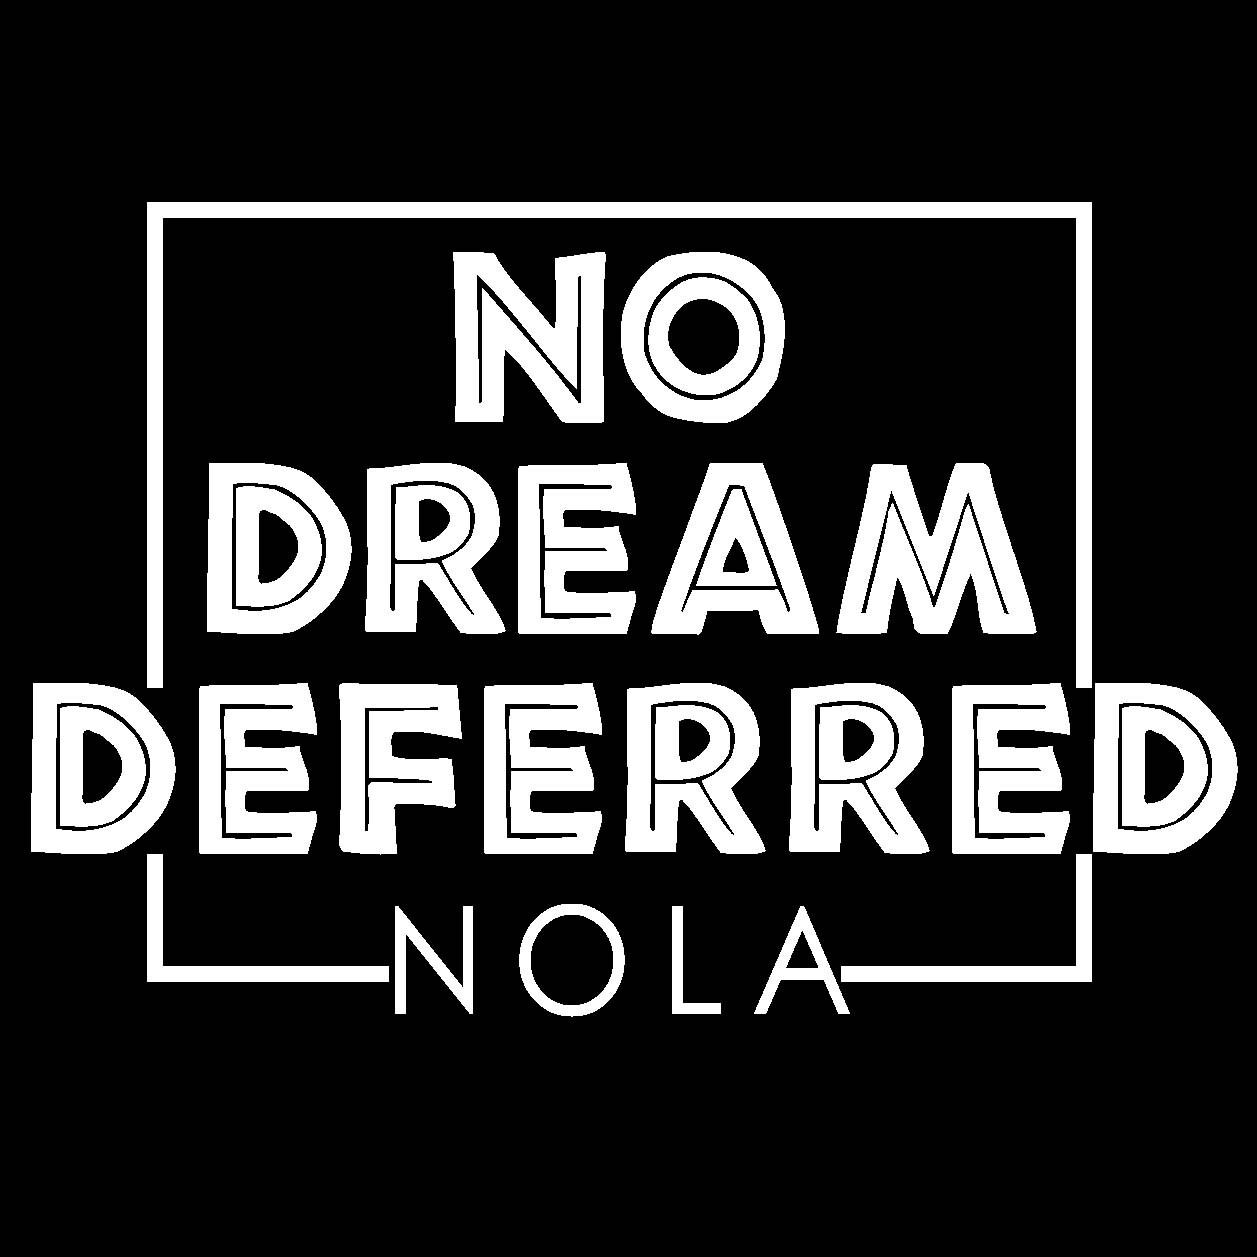 logo for no dream deferred nola organization.